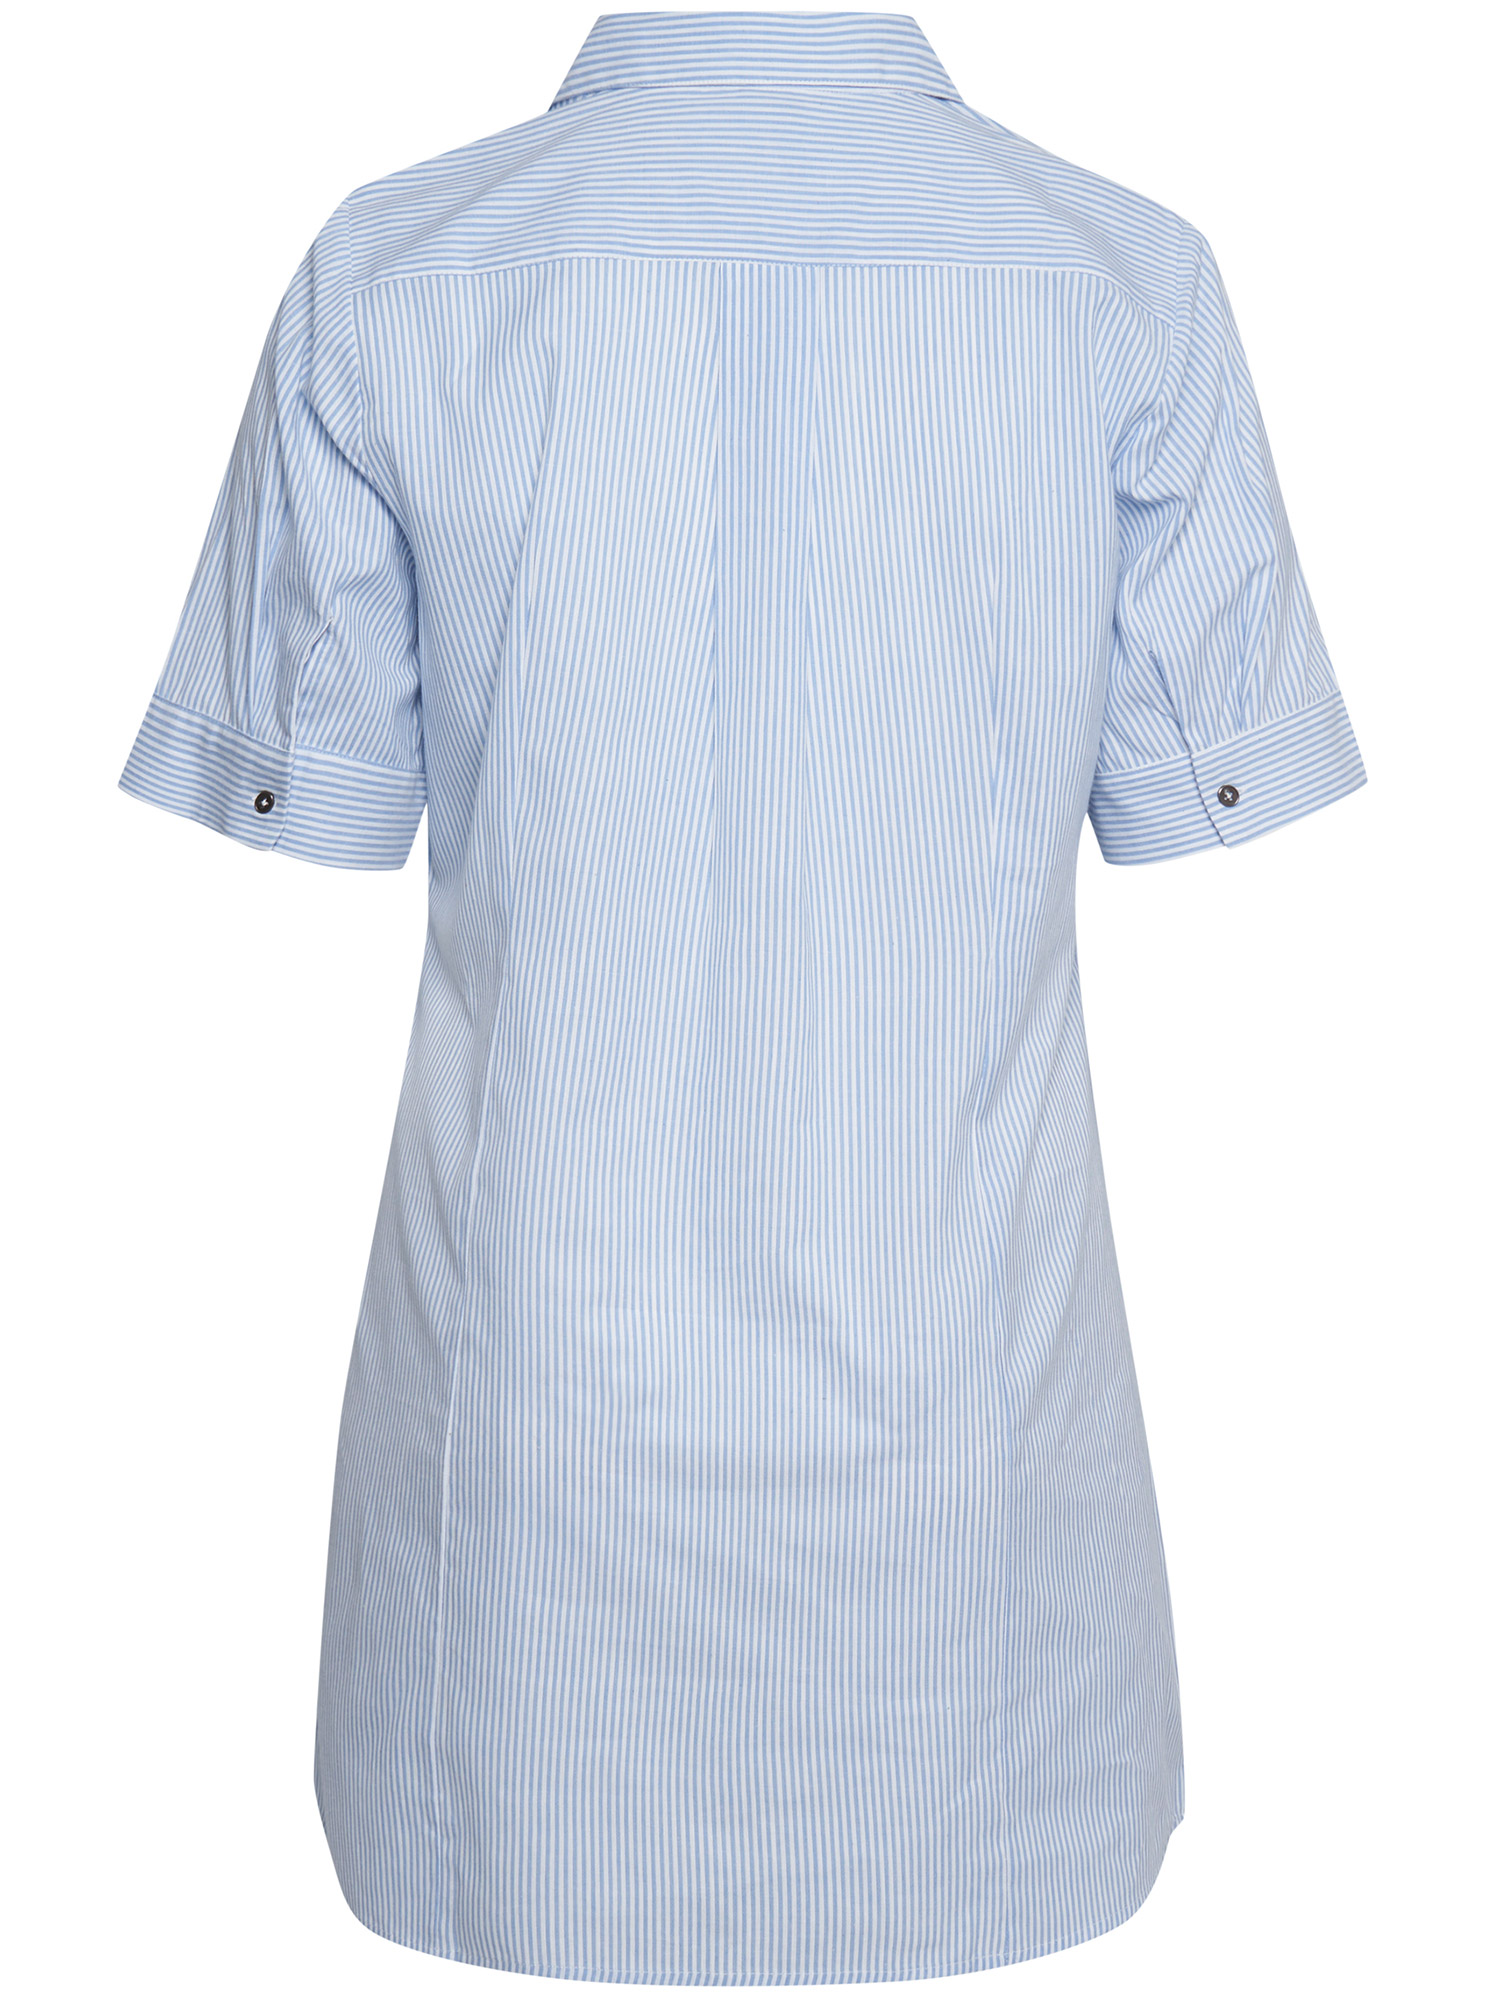 bomulls tunika med hvite og blå striper fra Adia